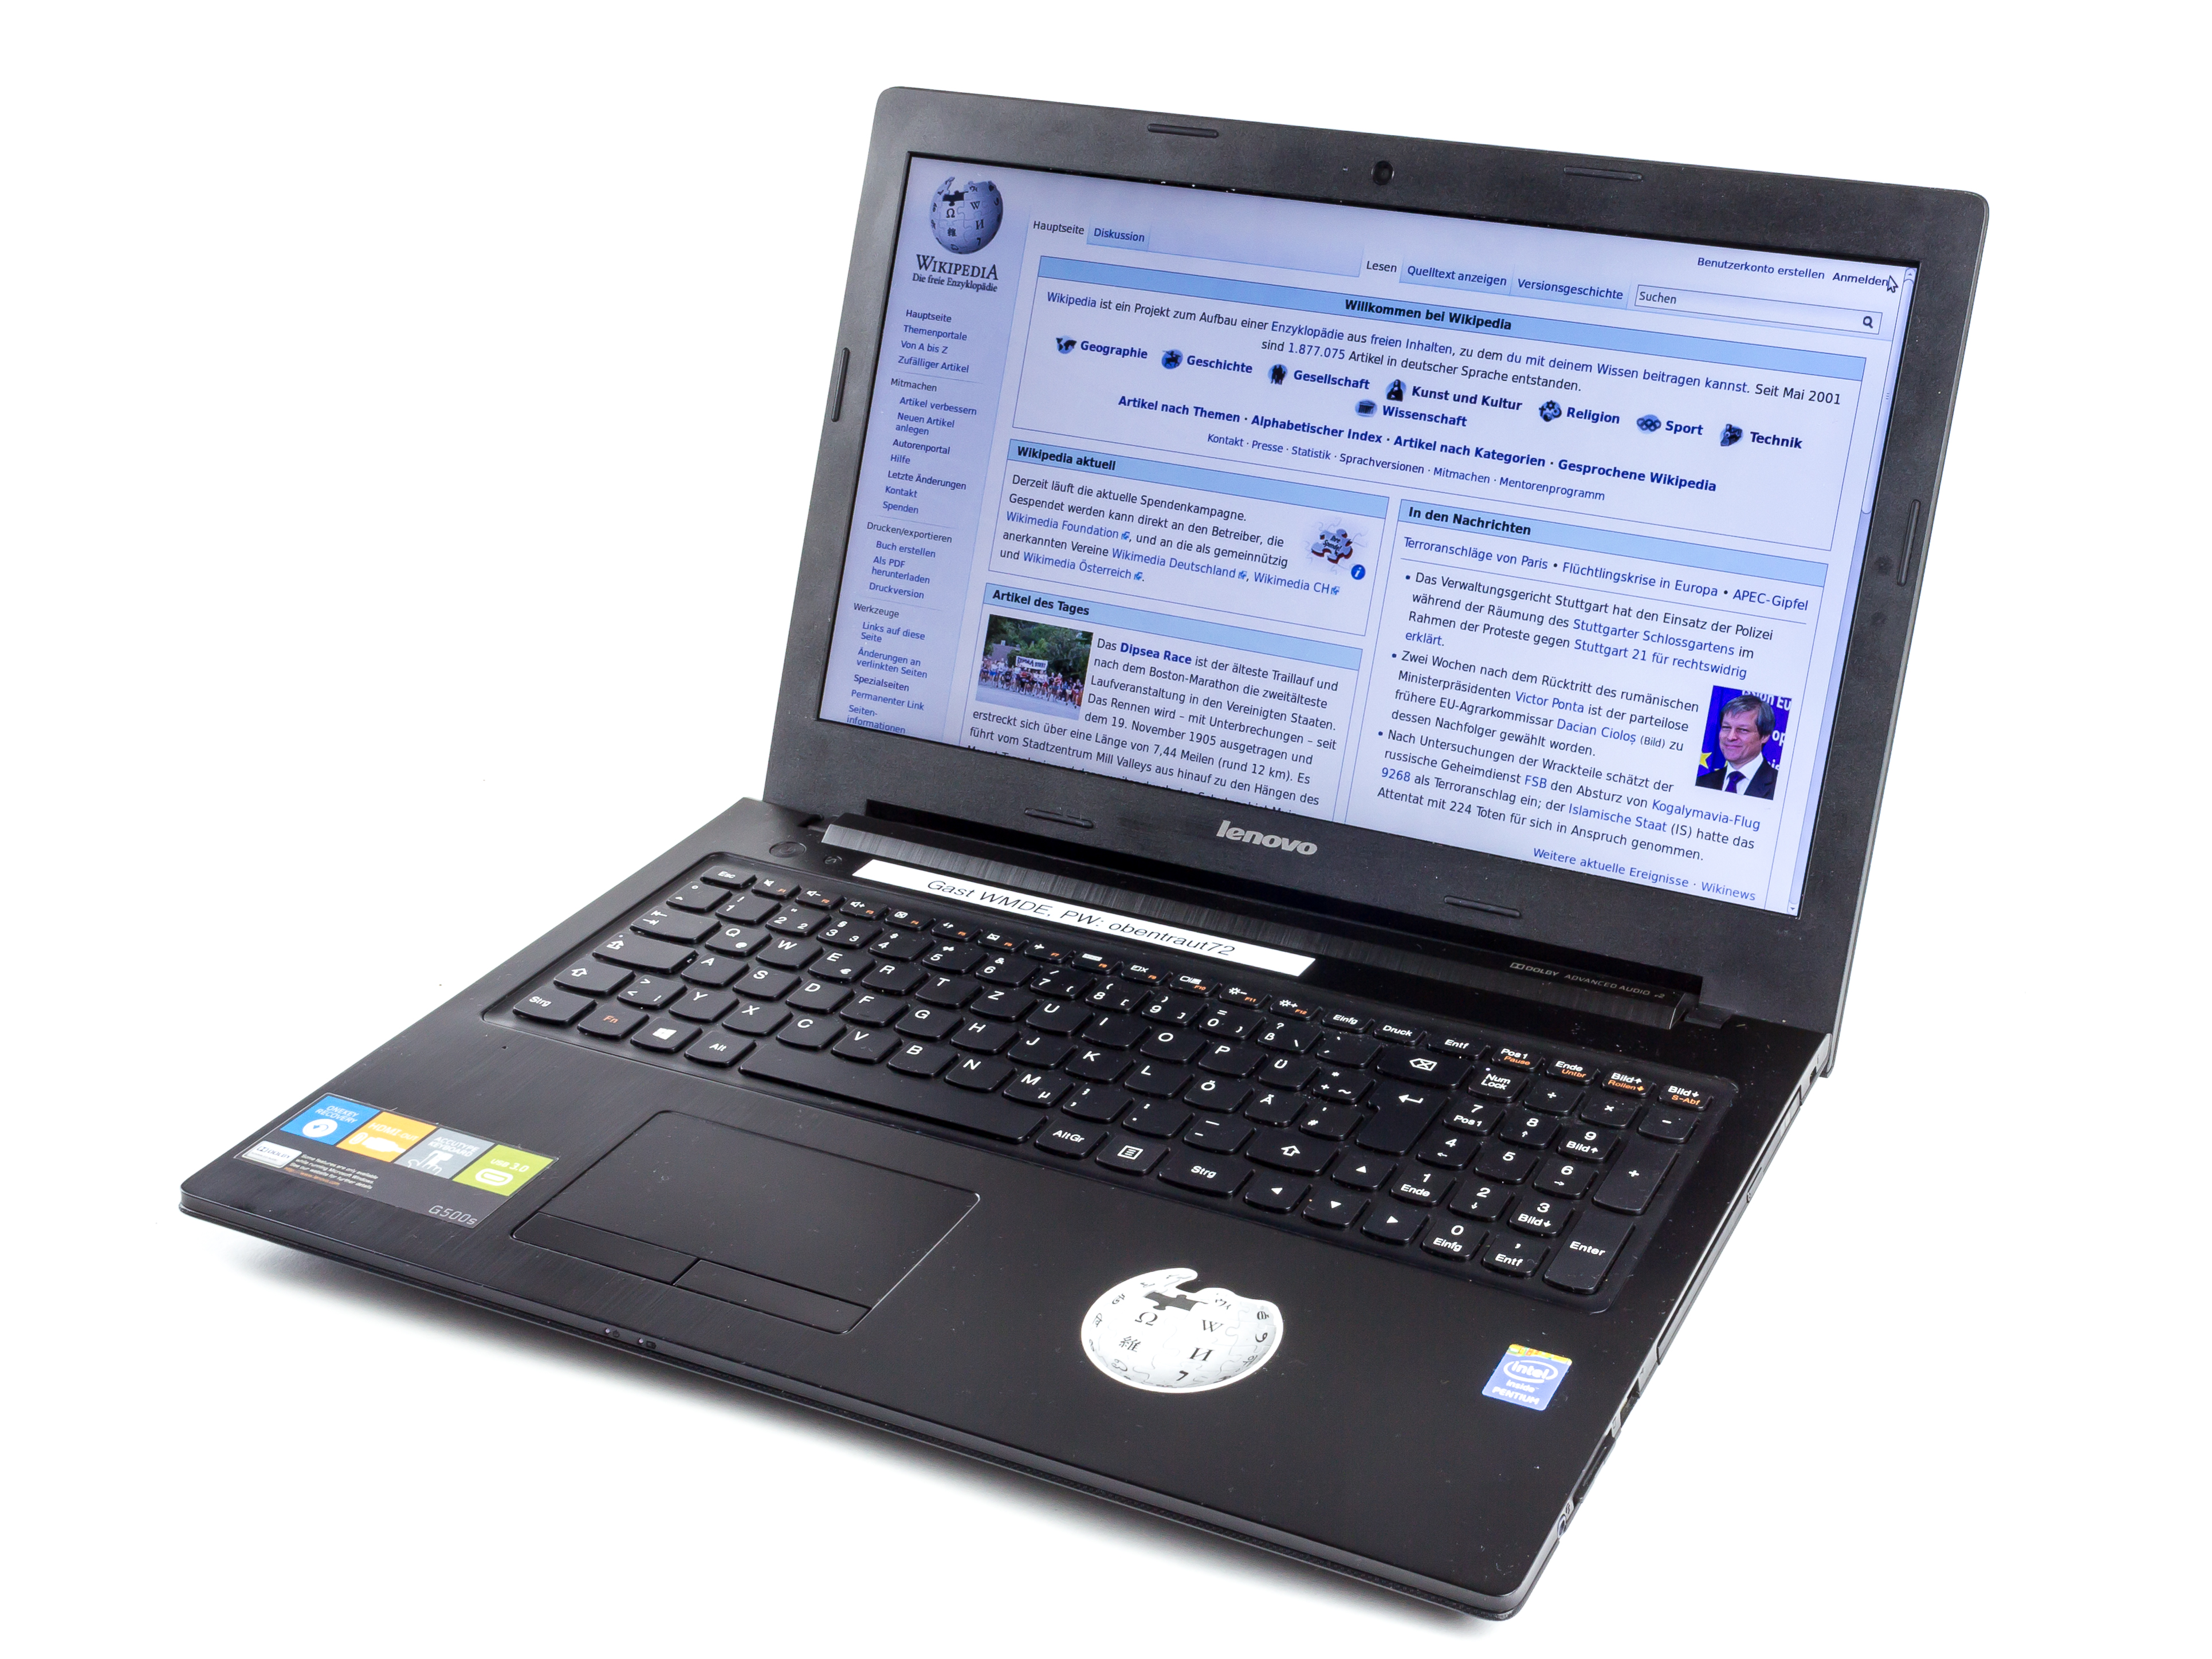 4. Khuyến cáo về Trợ giúp thủ thuật Máy tính Laptop